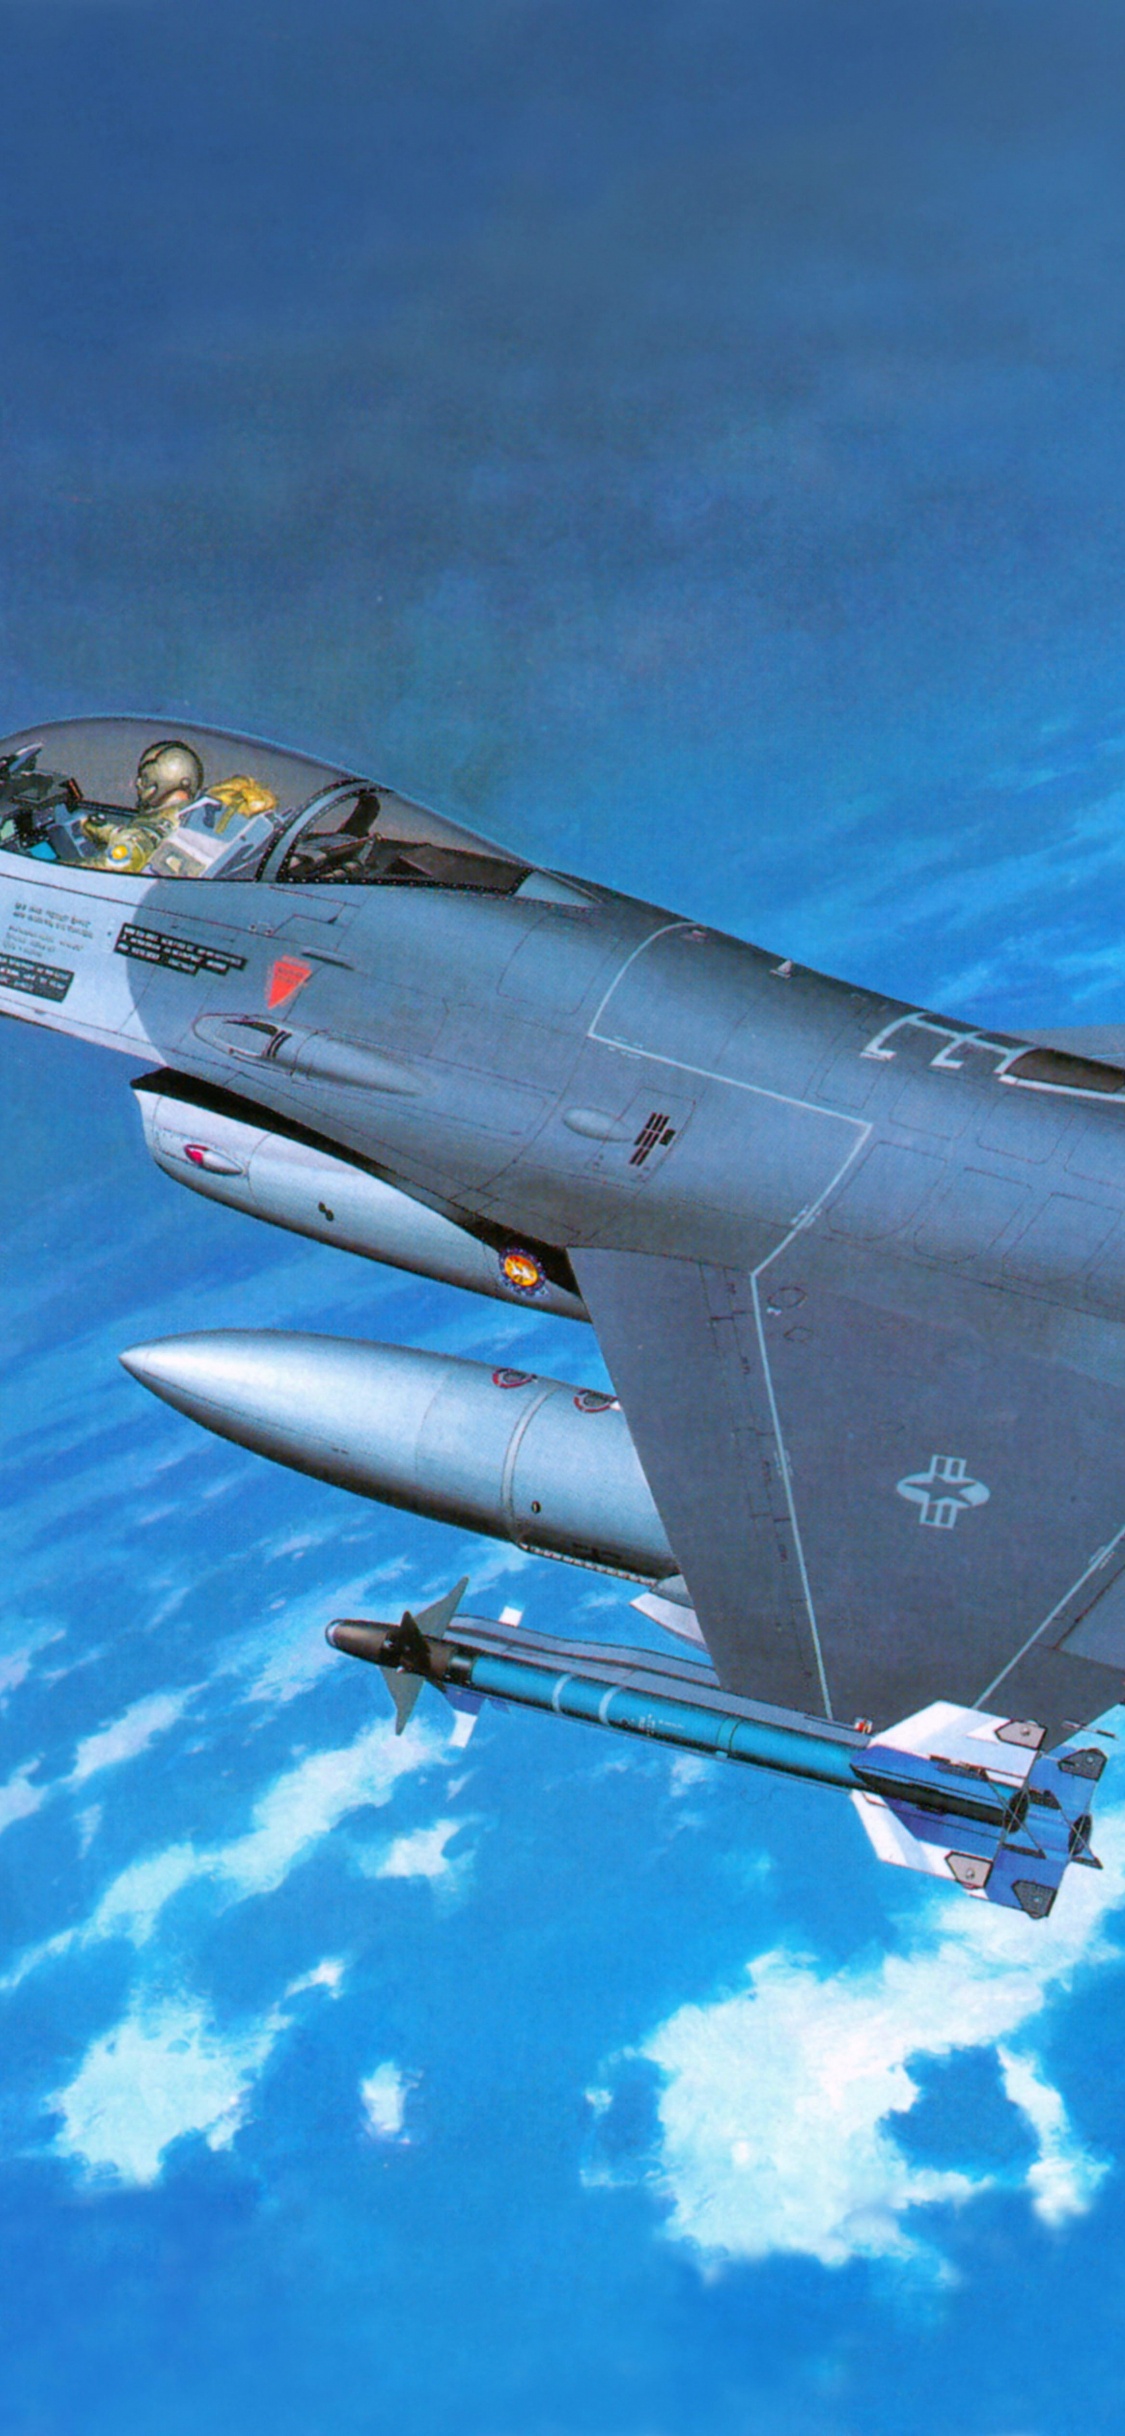 长谷川公司, 塑料模型, 军用飞机, 航空, 空军 壁纸 1125x2436 允许